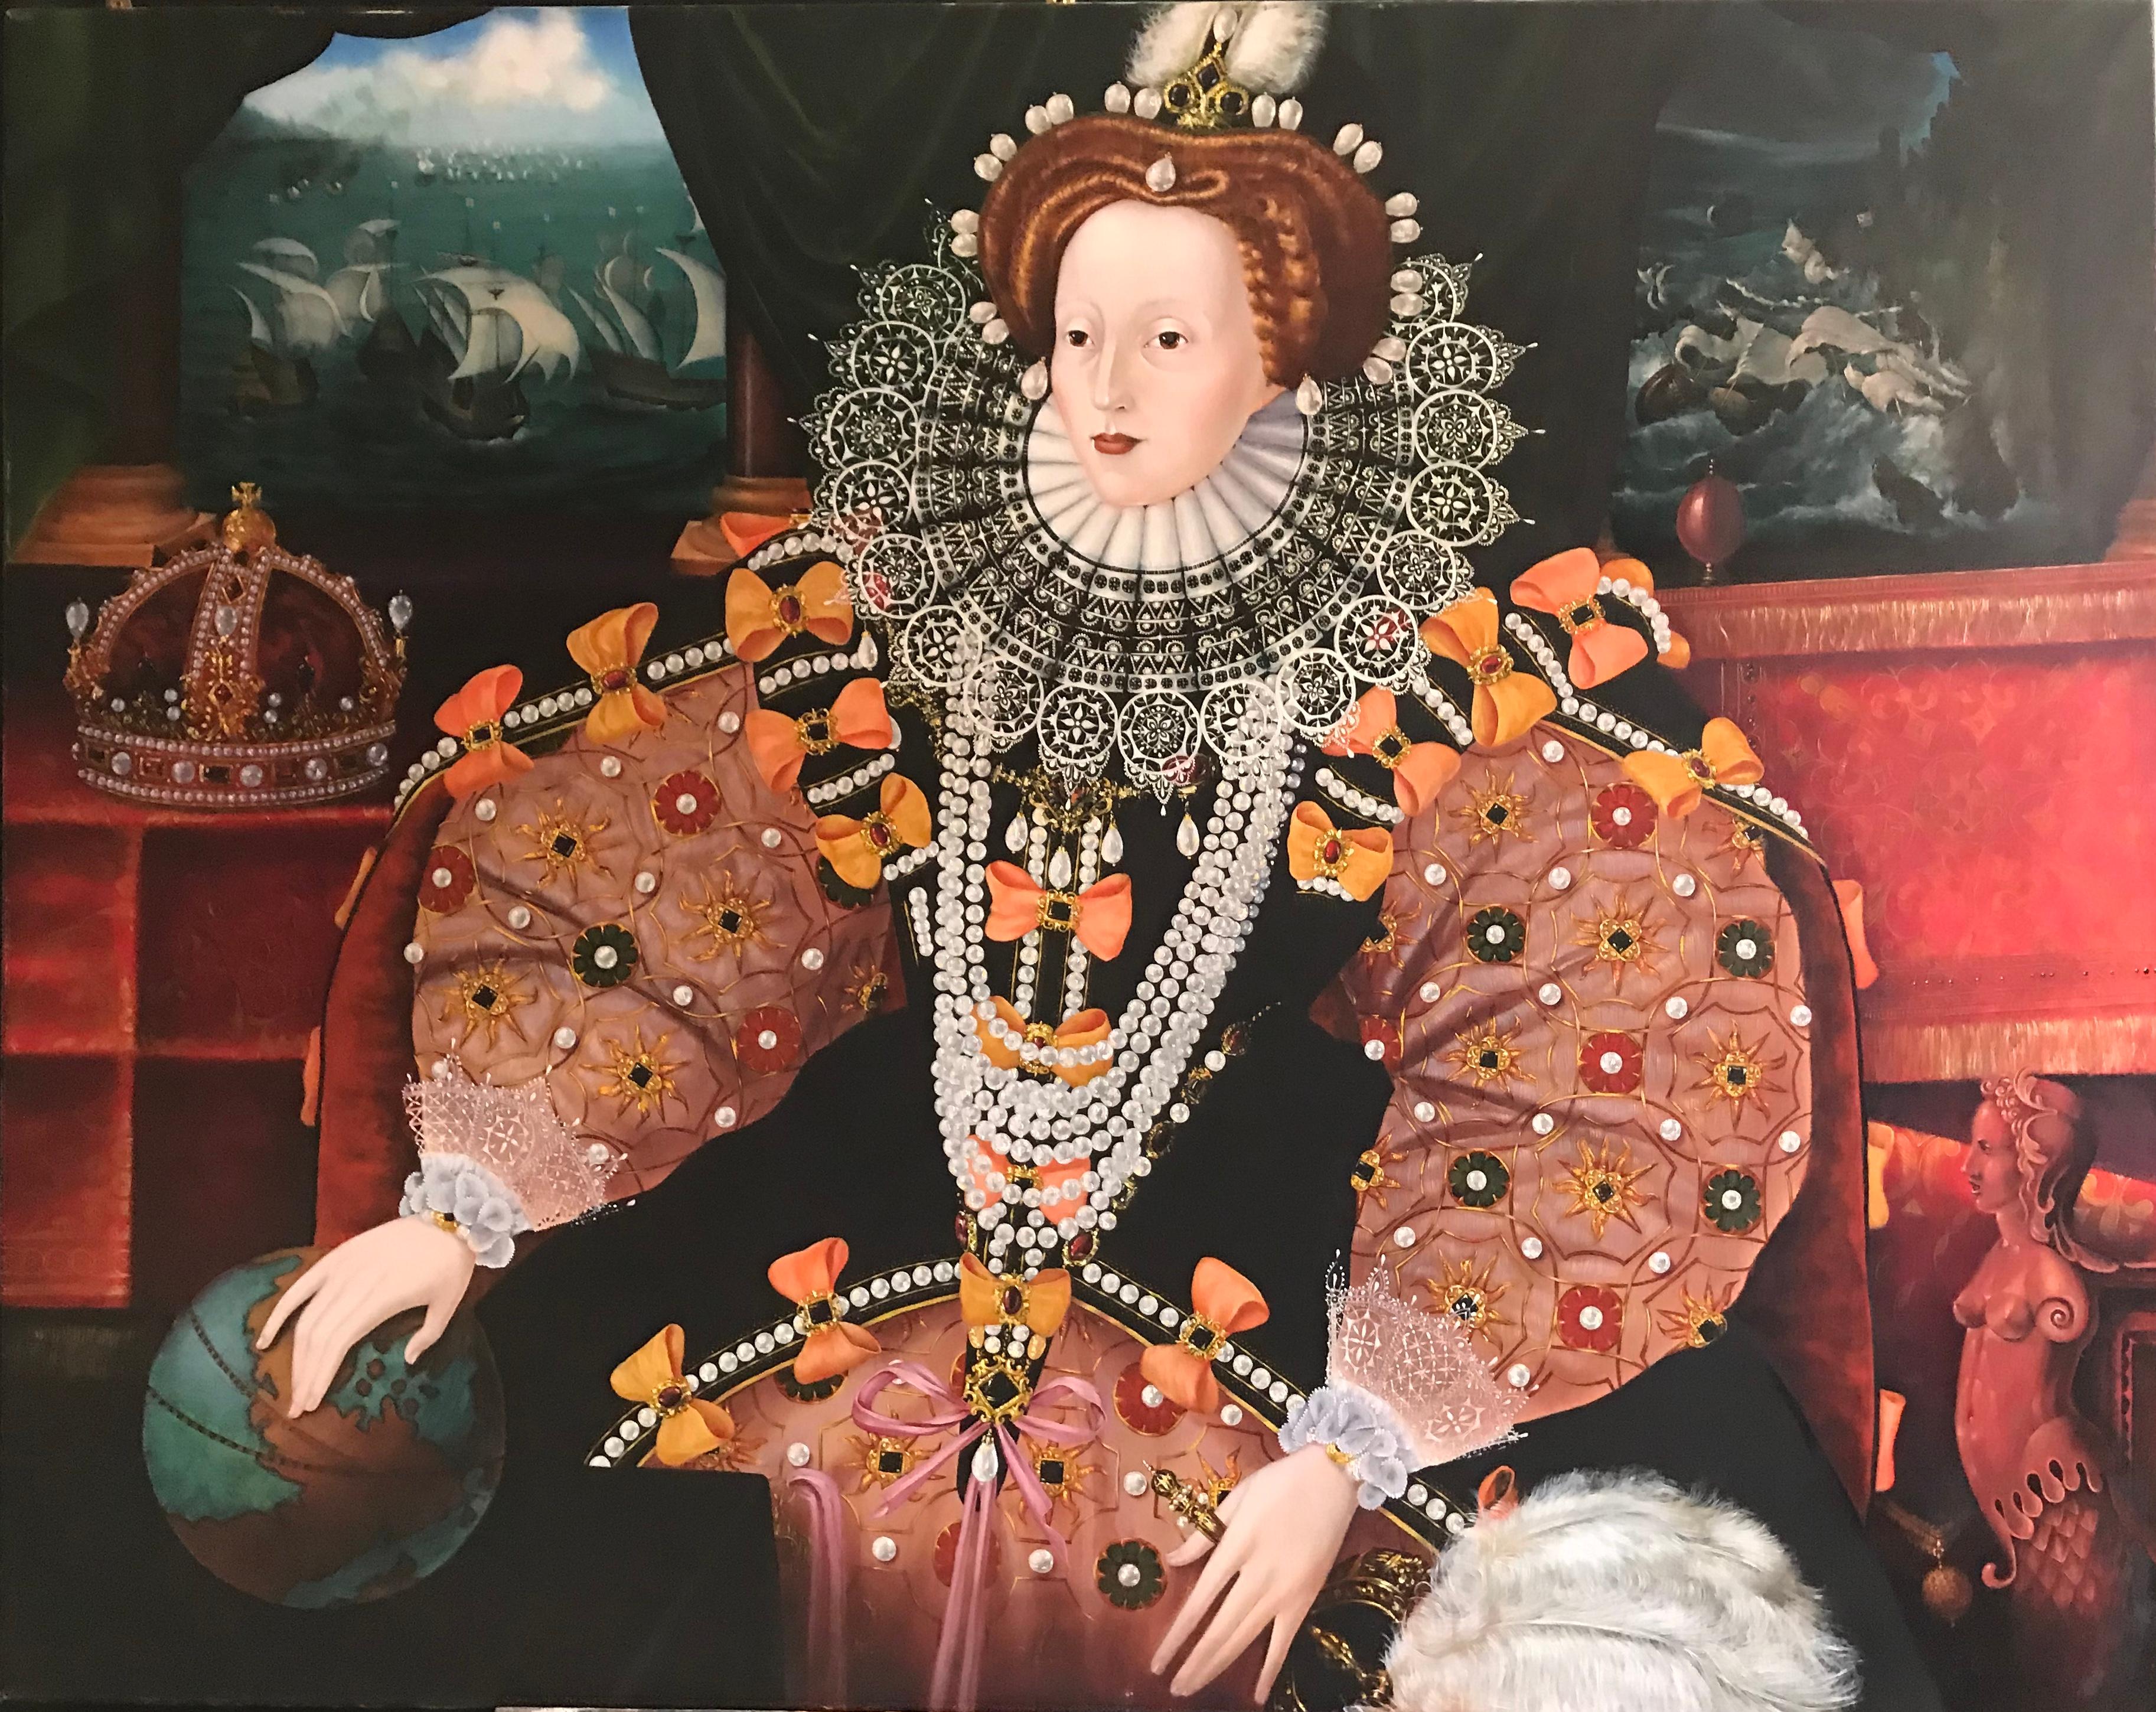 Paul Workman Portrait Painting - Queen Elizabeth 1 & The Spanish Armada Huge English Portrait Oil Painting